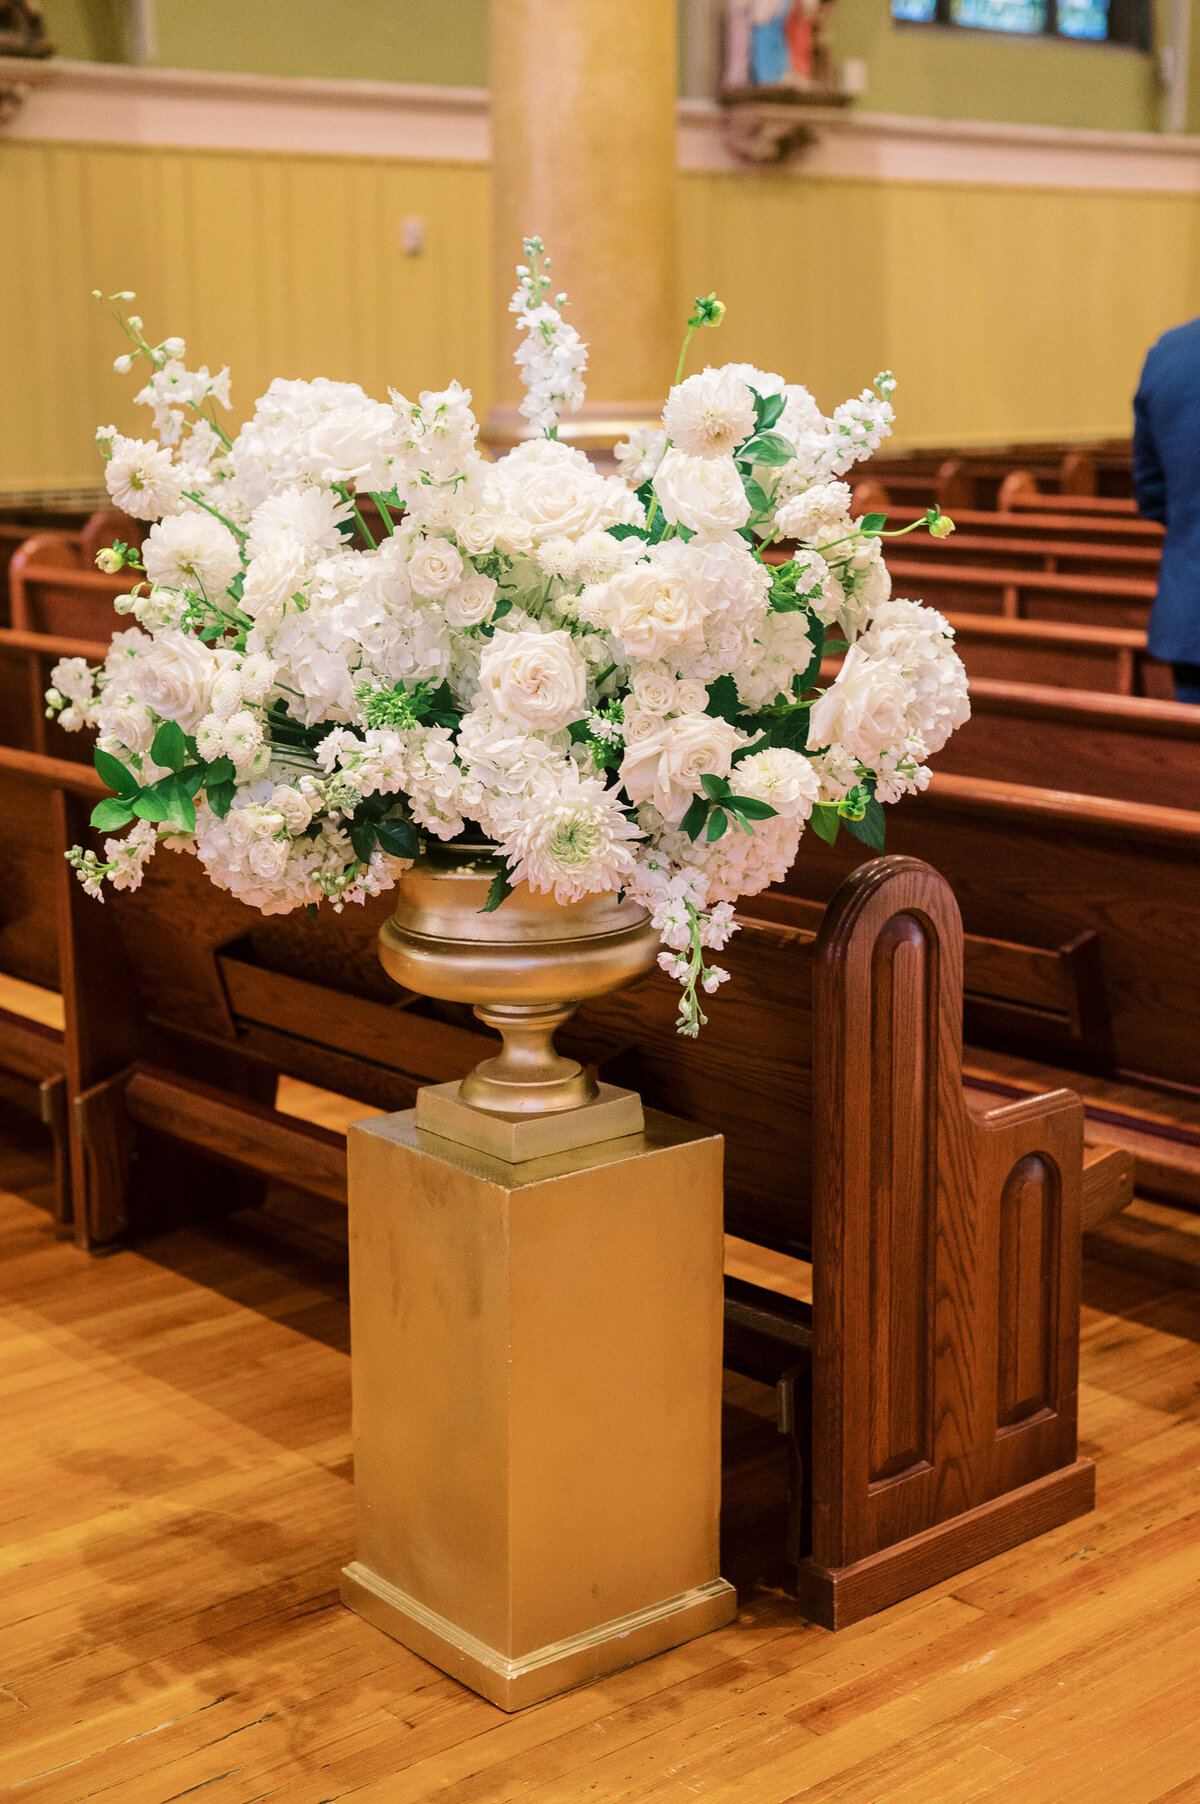 Kate-Murtaugh-Events-wedding-ceremony-aisle-floral-arrangements